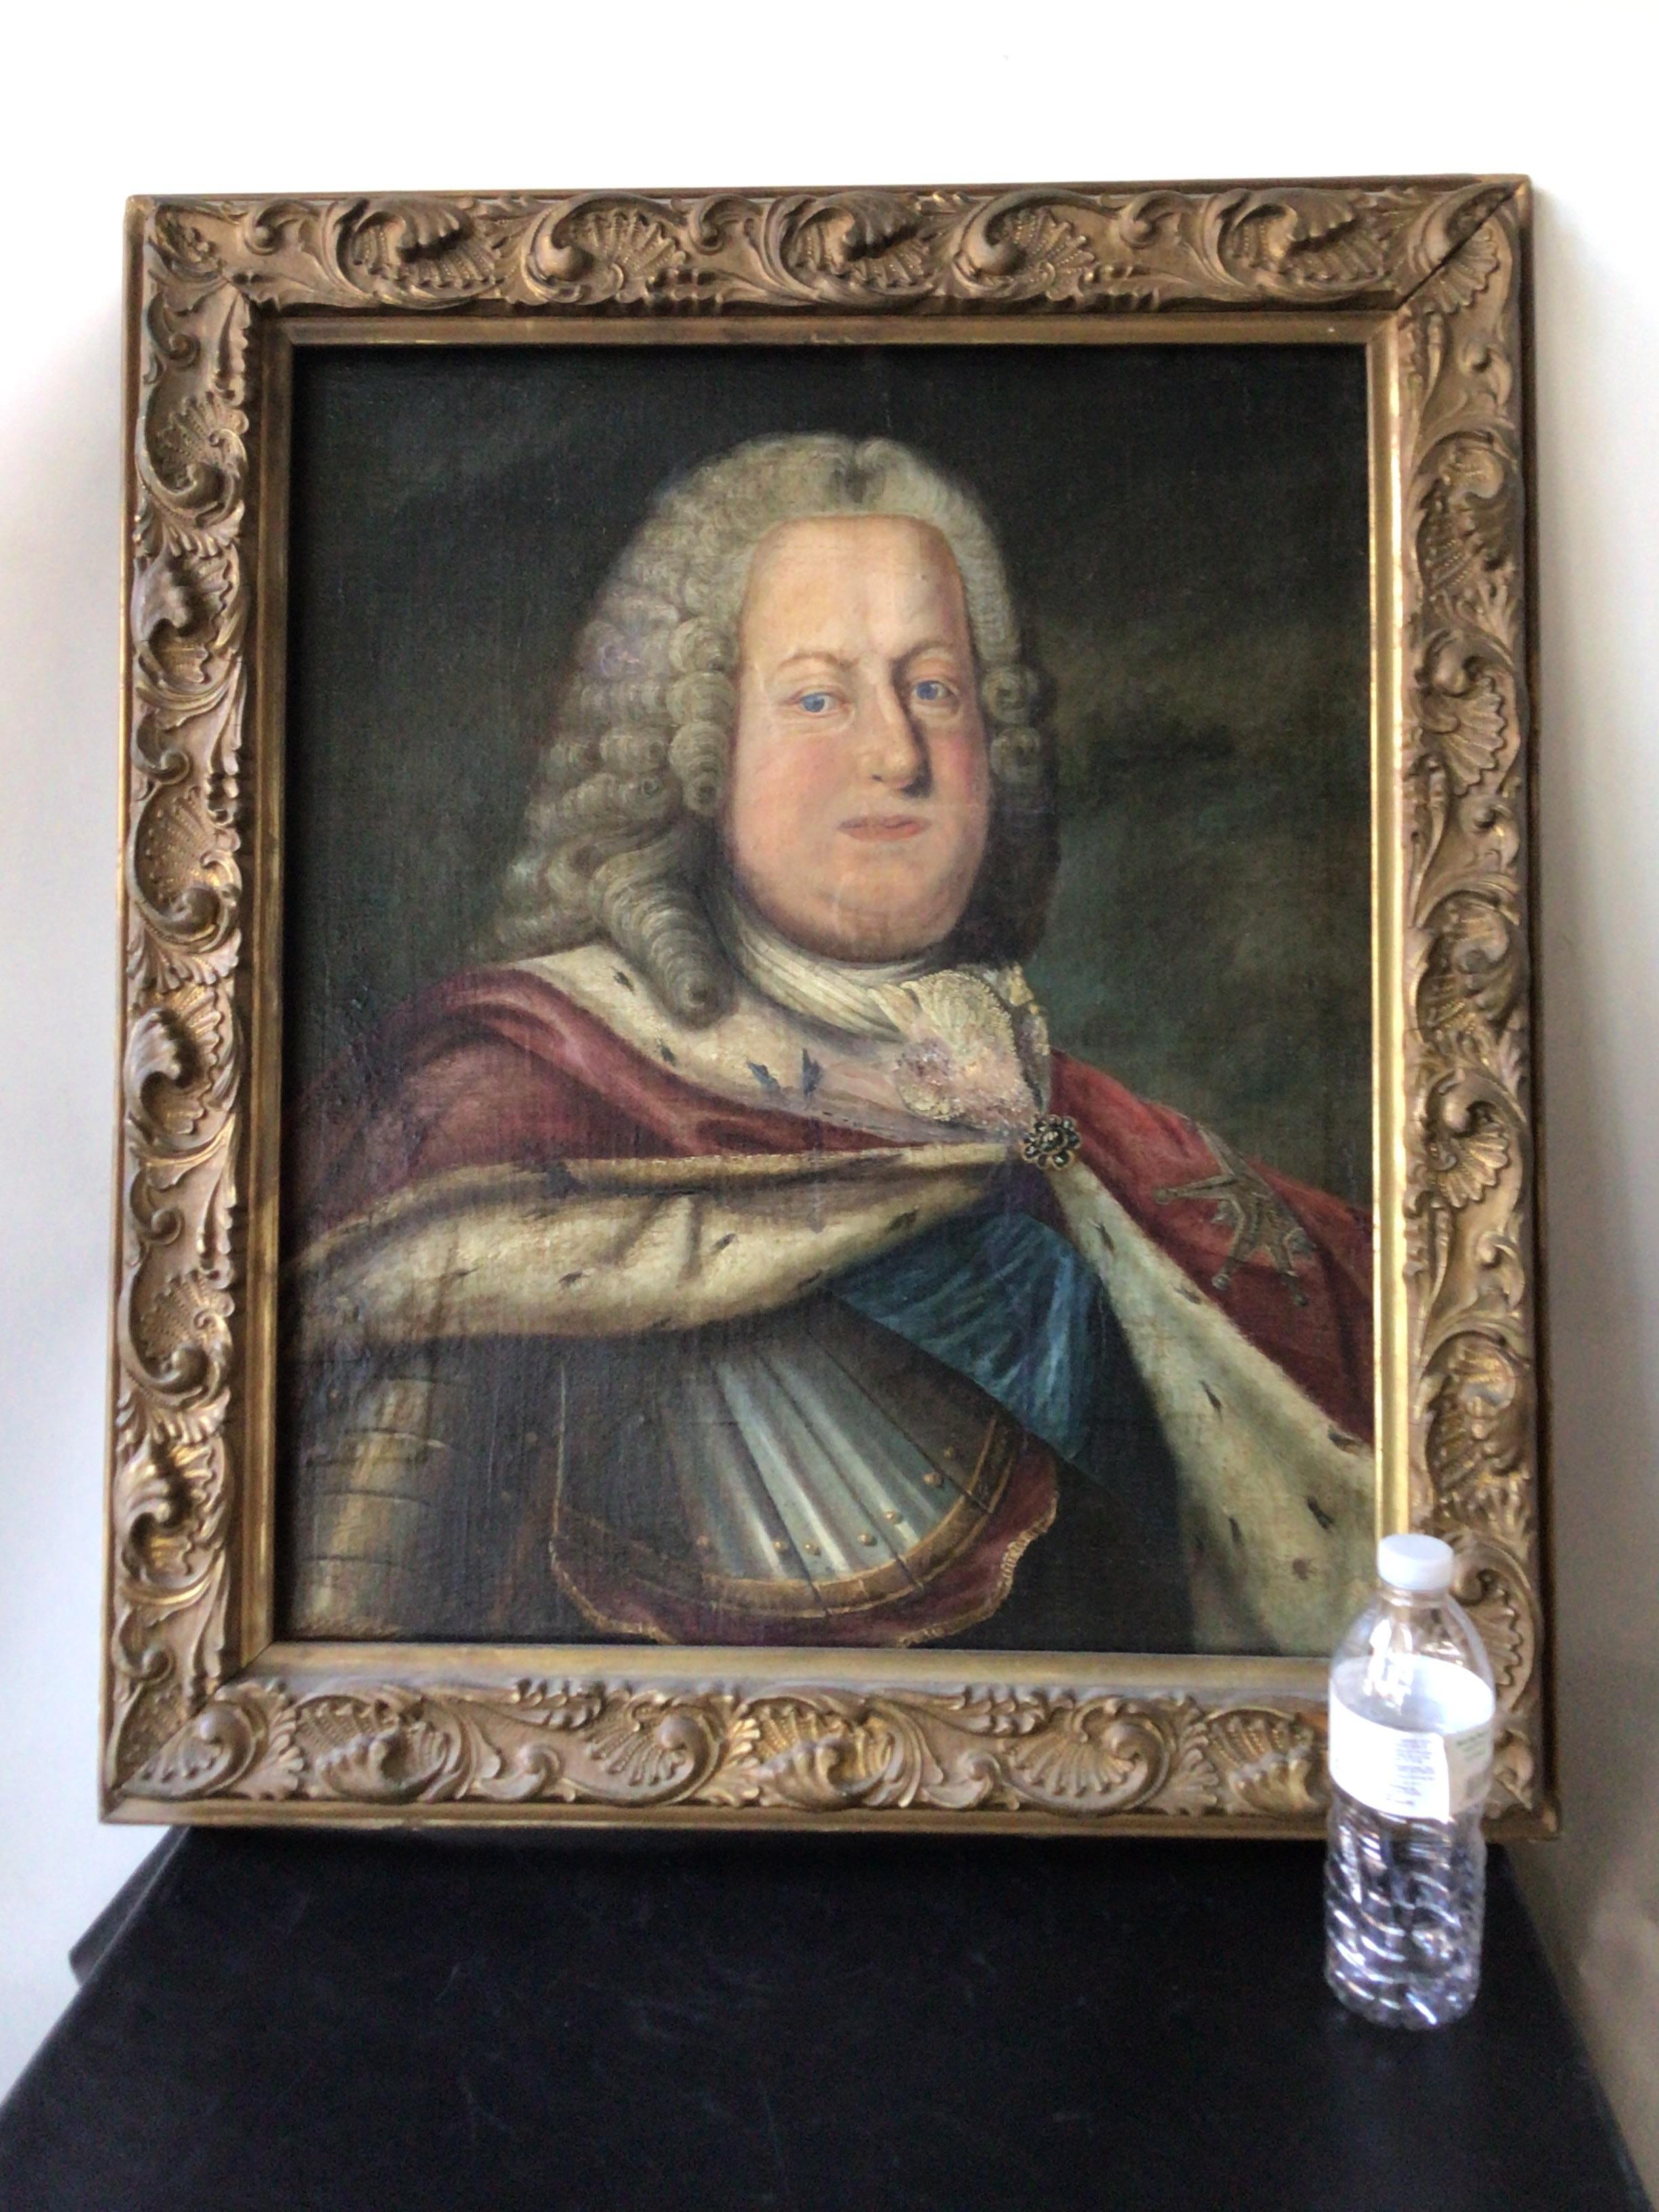 1700s portrait